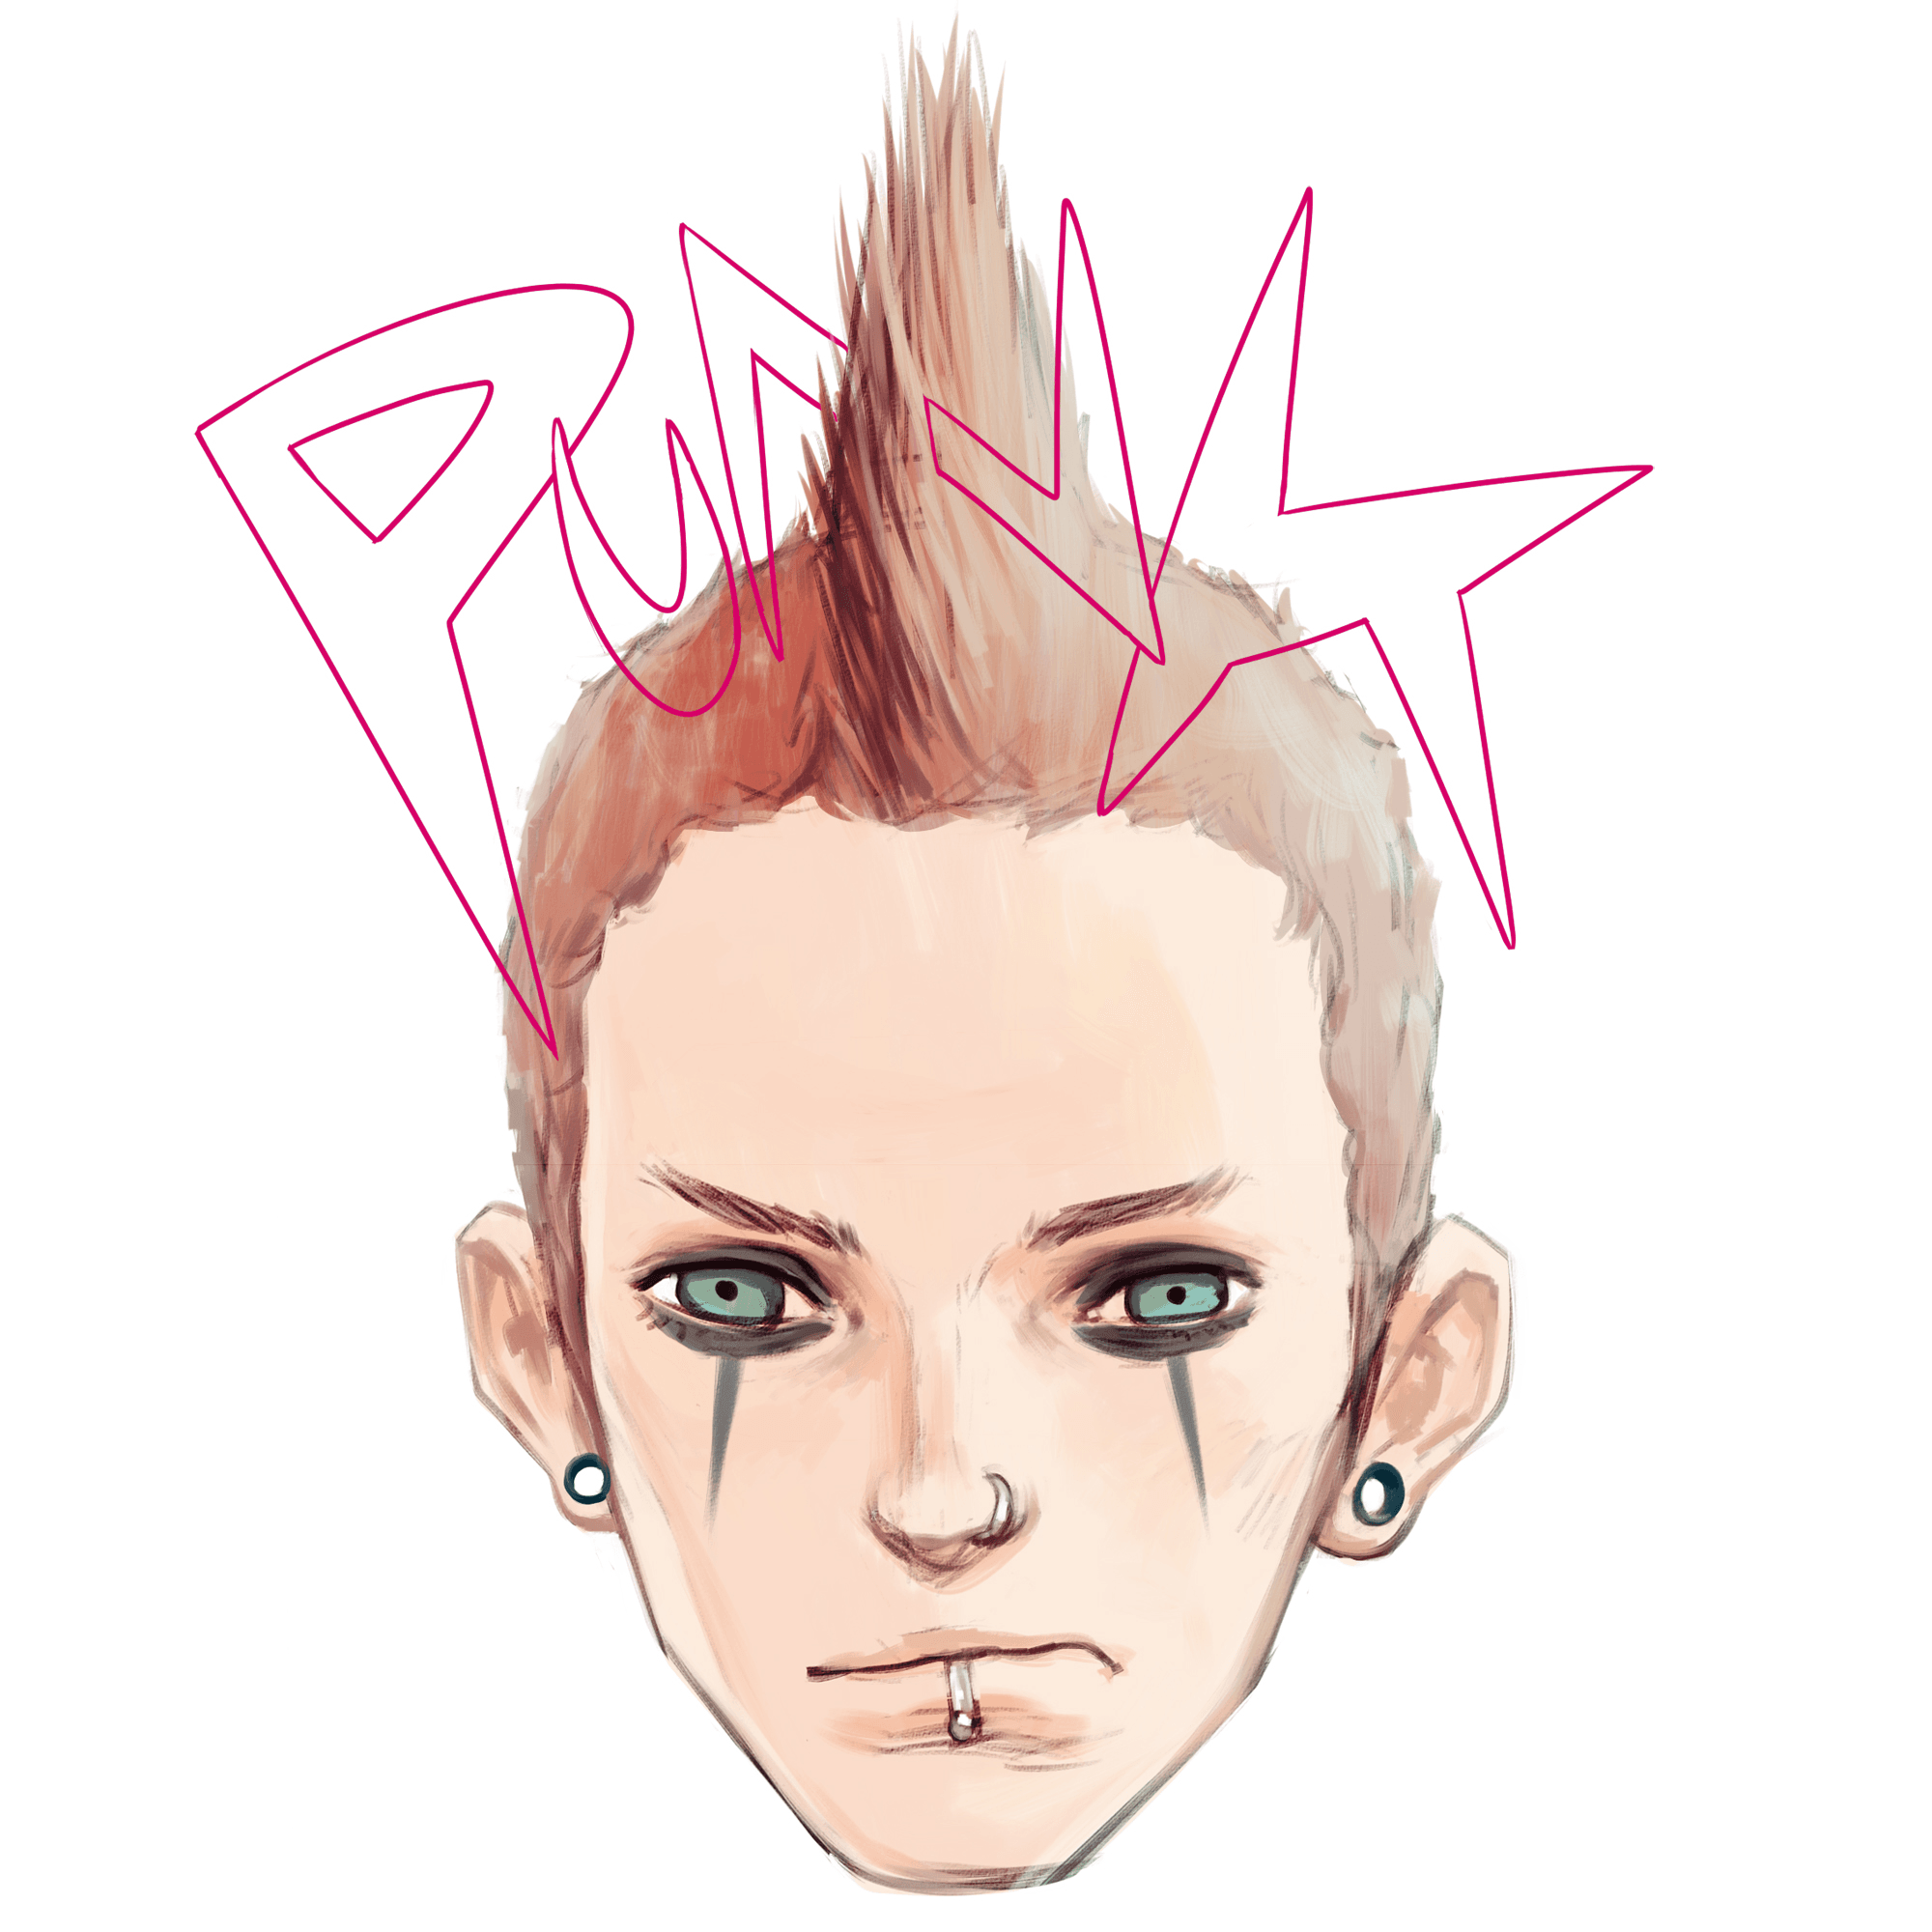 Punk boy